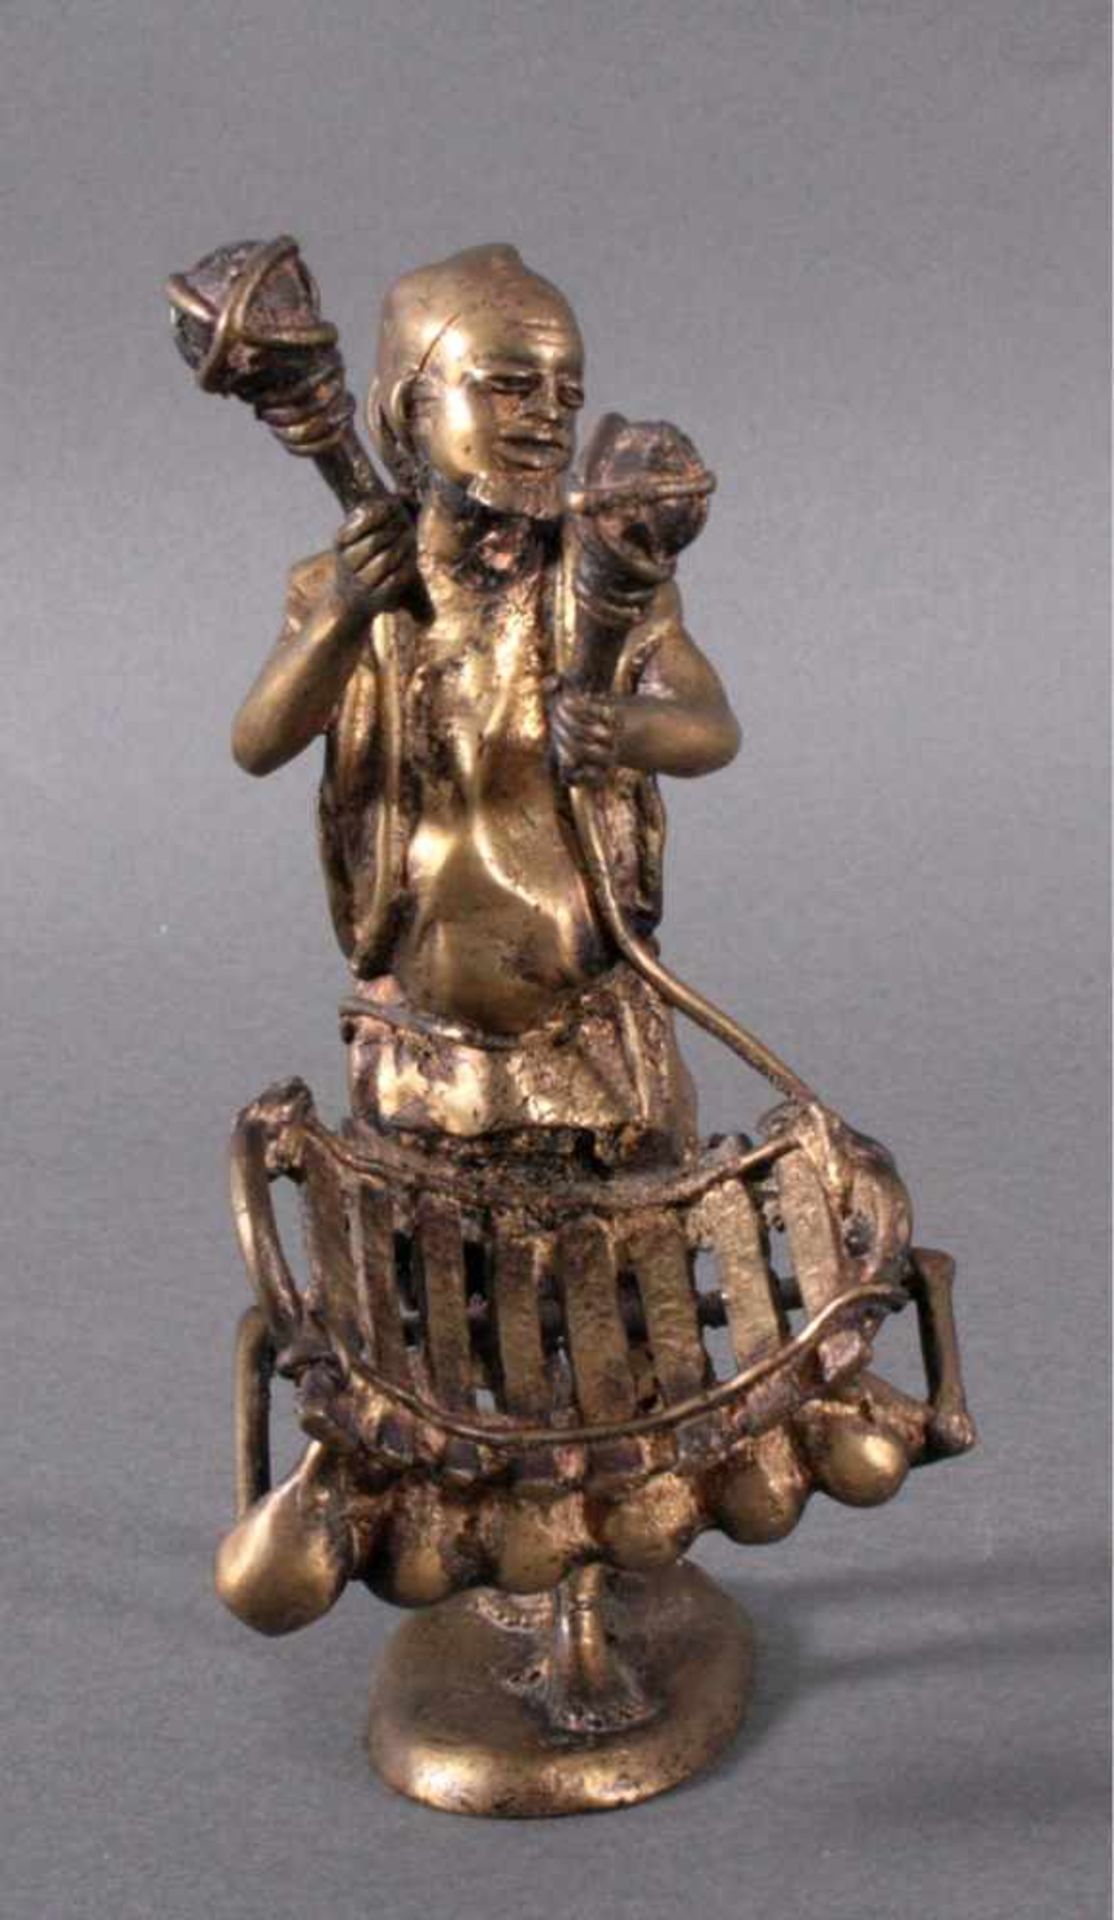 Bronzefigur ChinaGlockenspieler, ovaler Stand, detailliert gearbeitet,verlorene Form, ca. H- 21 cm - Bild 2 aus 5